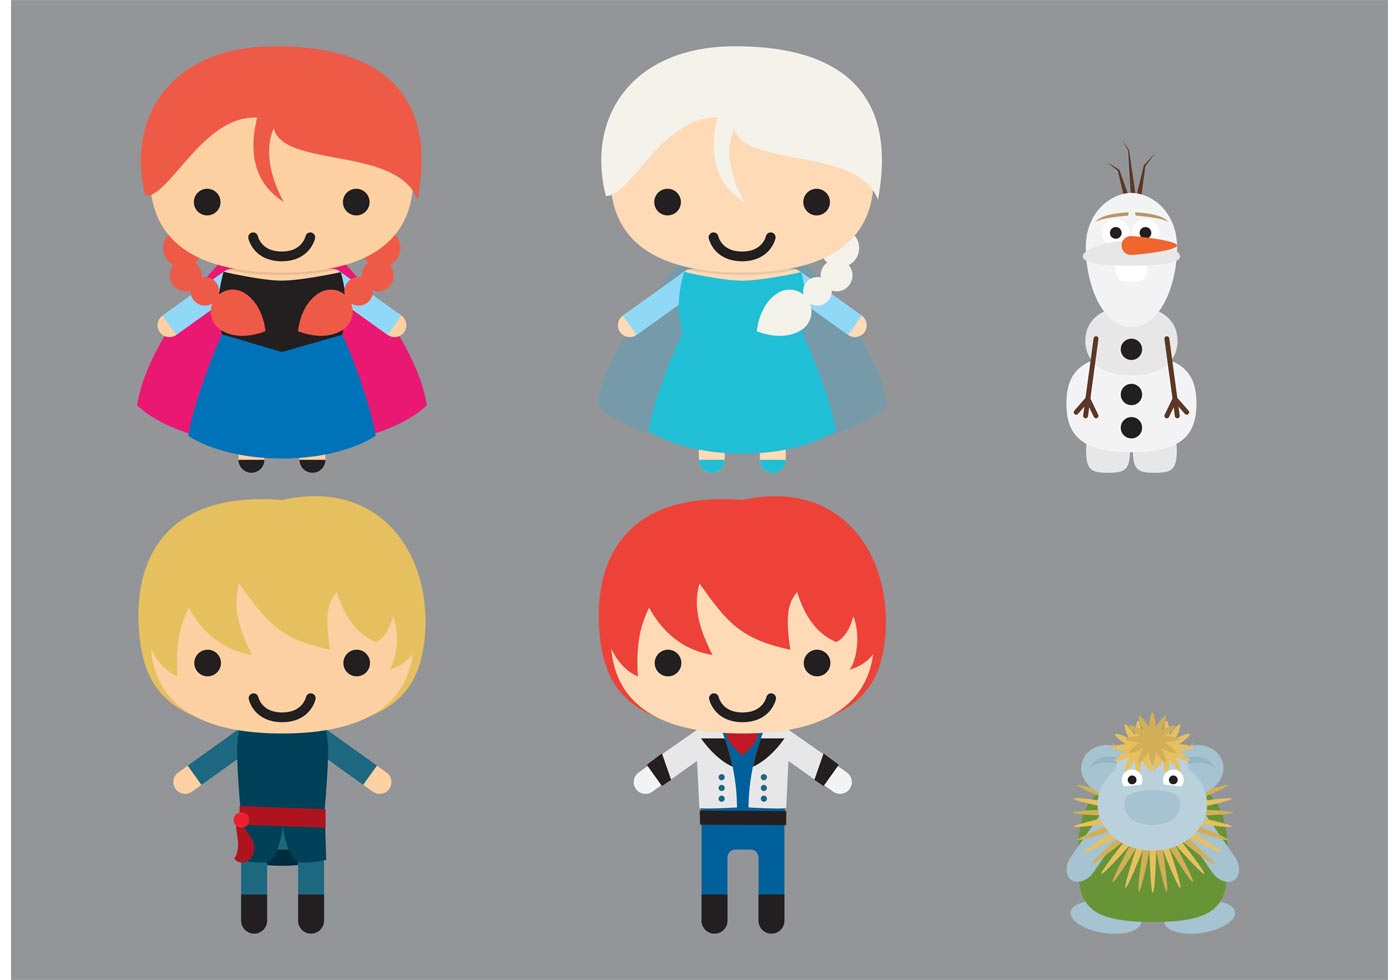 Download Frozen Character Vectors - Download Free Vector Art, Stock ...